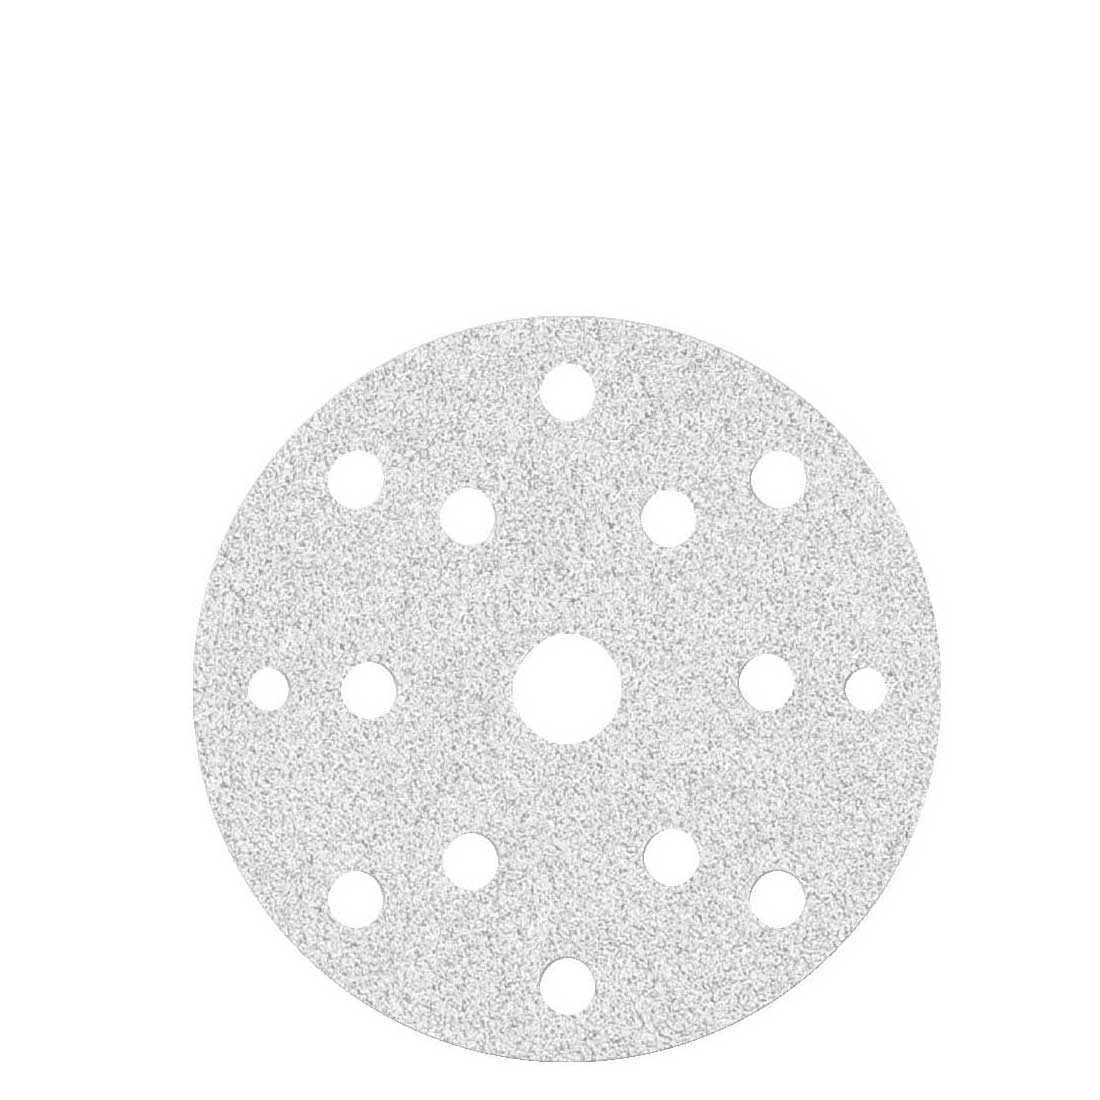 MioTools hook & loop sanding discs for random orbital sanders, G40–400, Ø 150 mm / 15 hole / stearated aluminium oxide